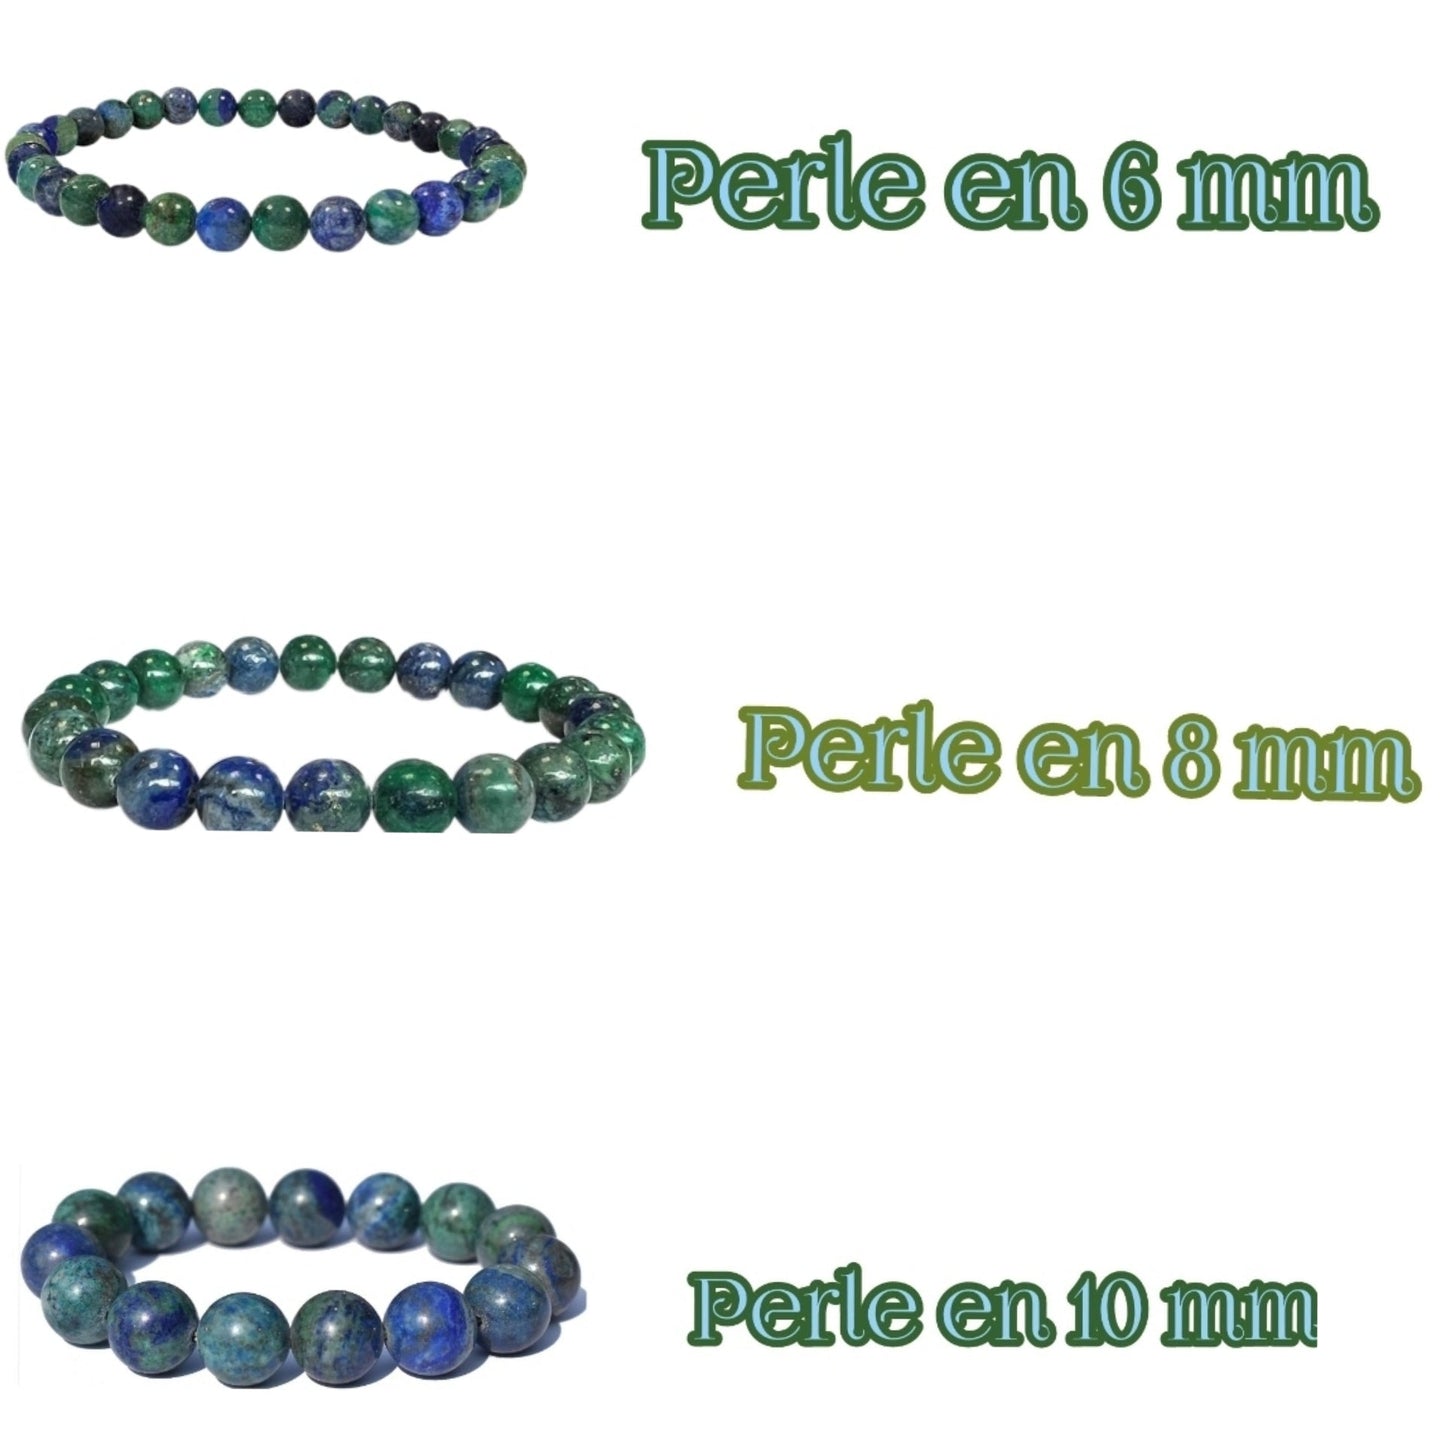 Azurite-Malachite bracelet - personnalisation et création